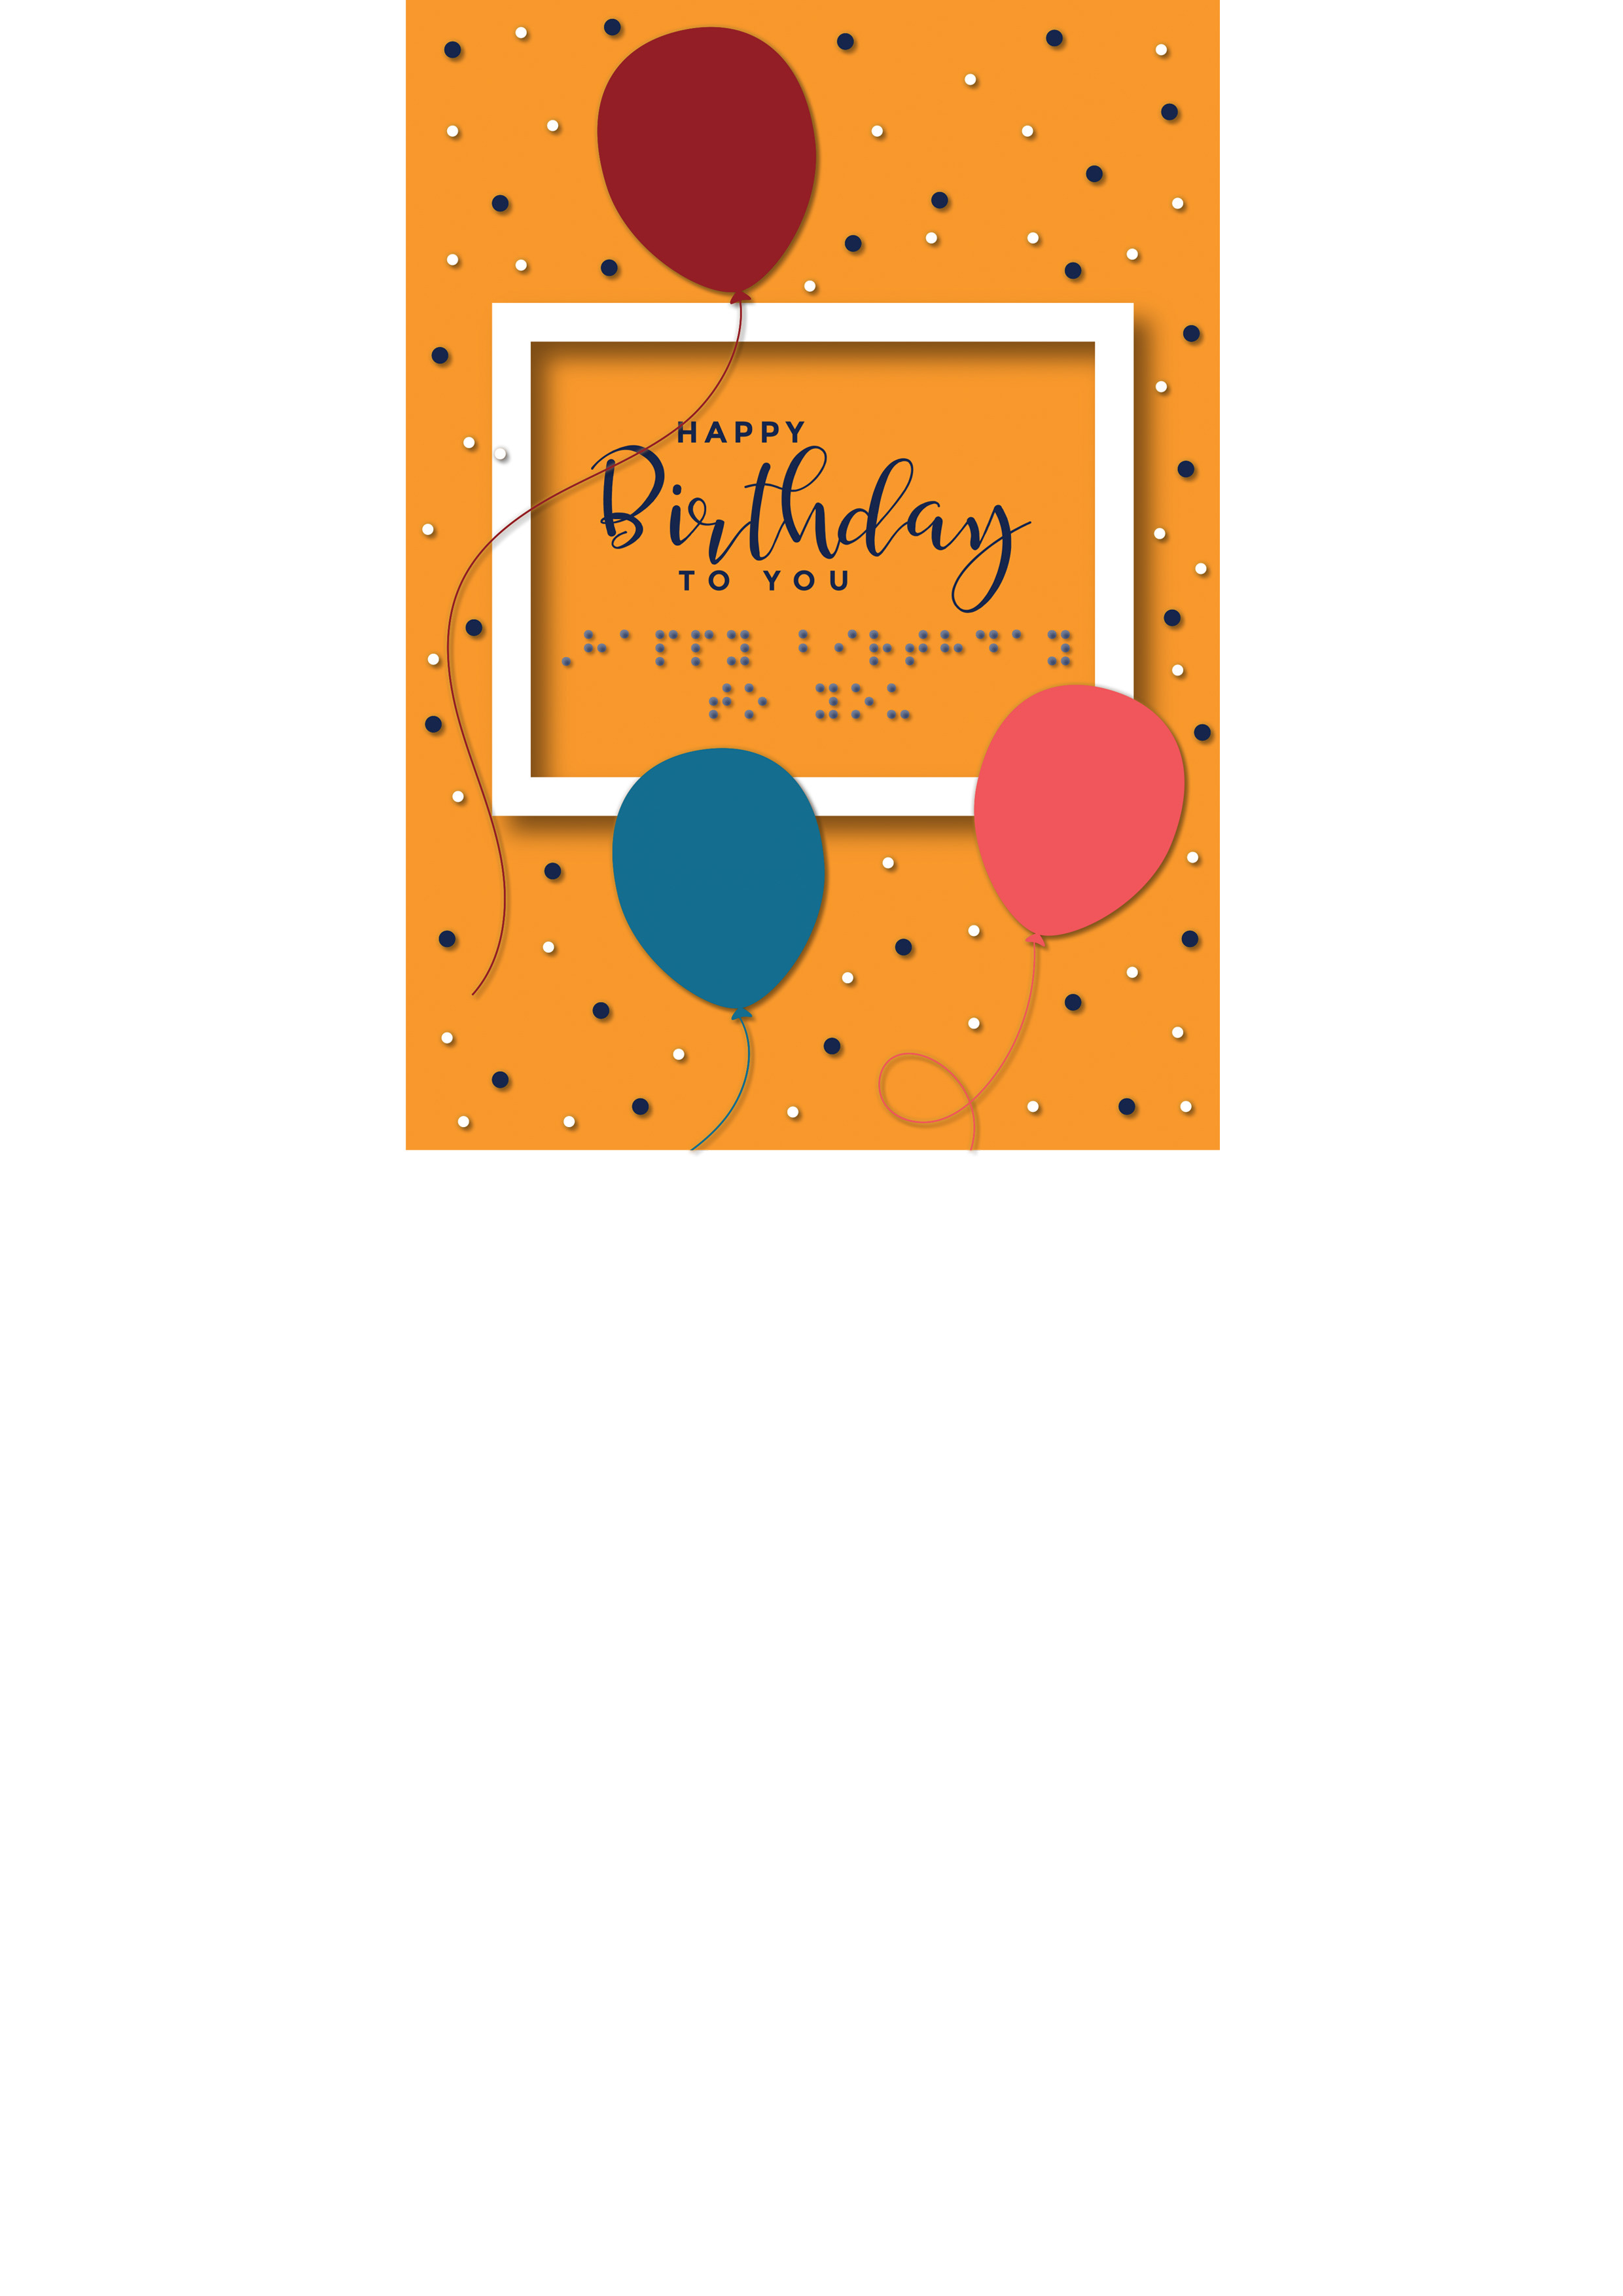 Voelbare kaart met reliëfafbeeldingen van drie ballonnen in een kader op een oranje achtergrond. De tekst 'Happy Birthday to you' staat zowel in zwartdruk als in braille op de kaart.